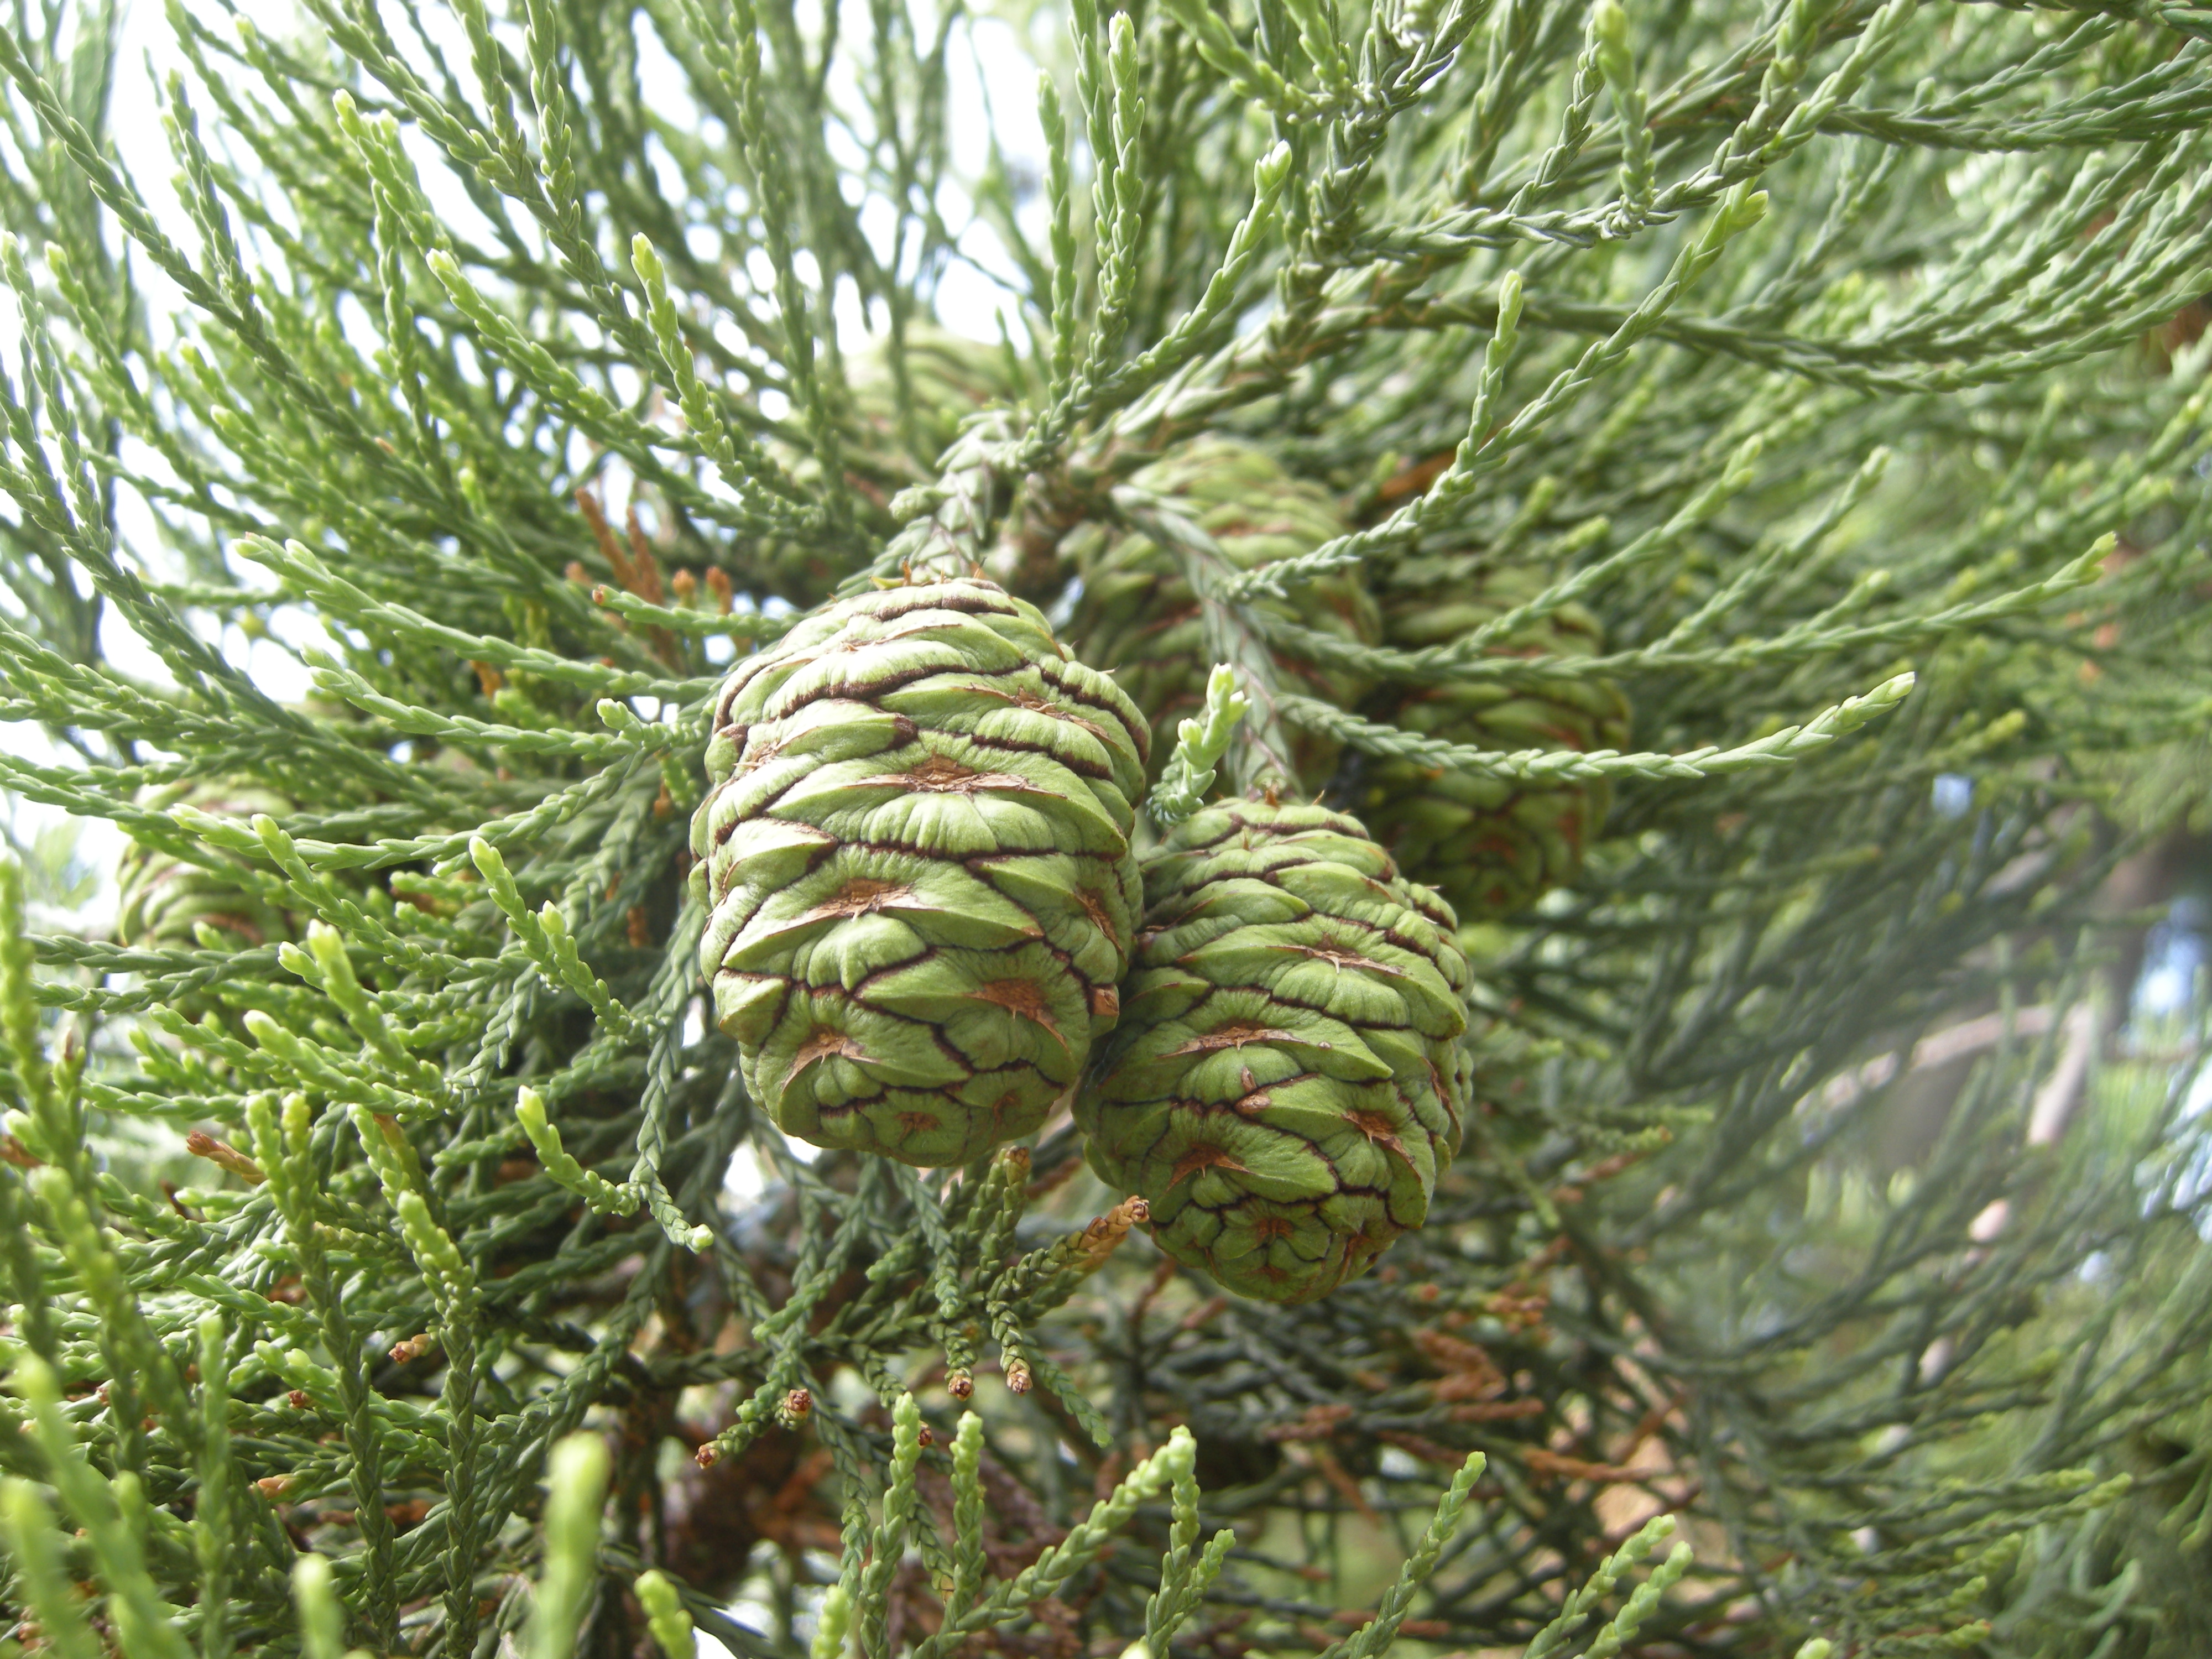 sequoiadendron giganteum juvenile cones